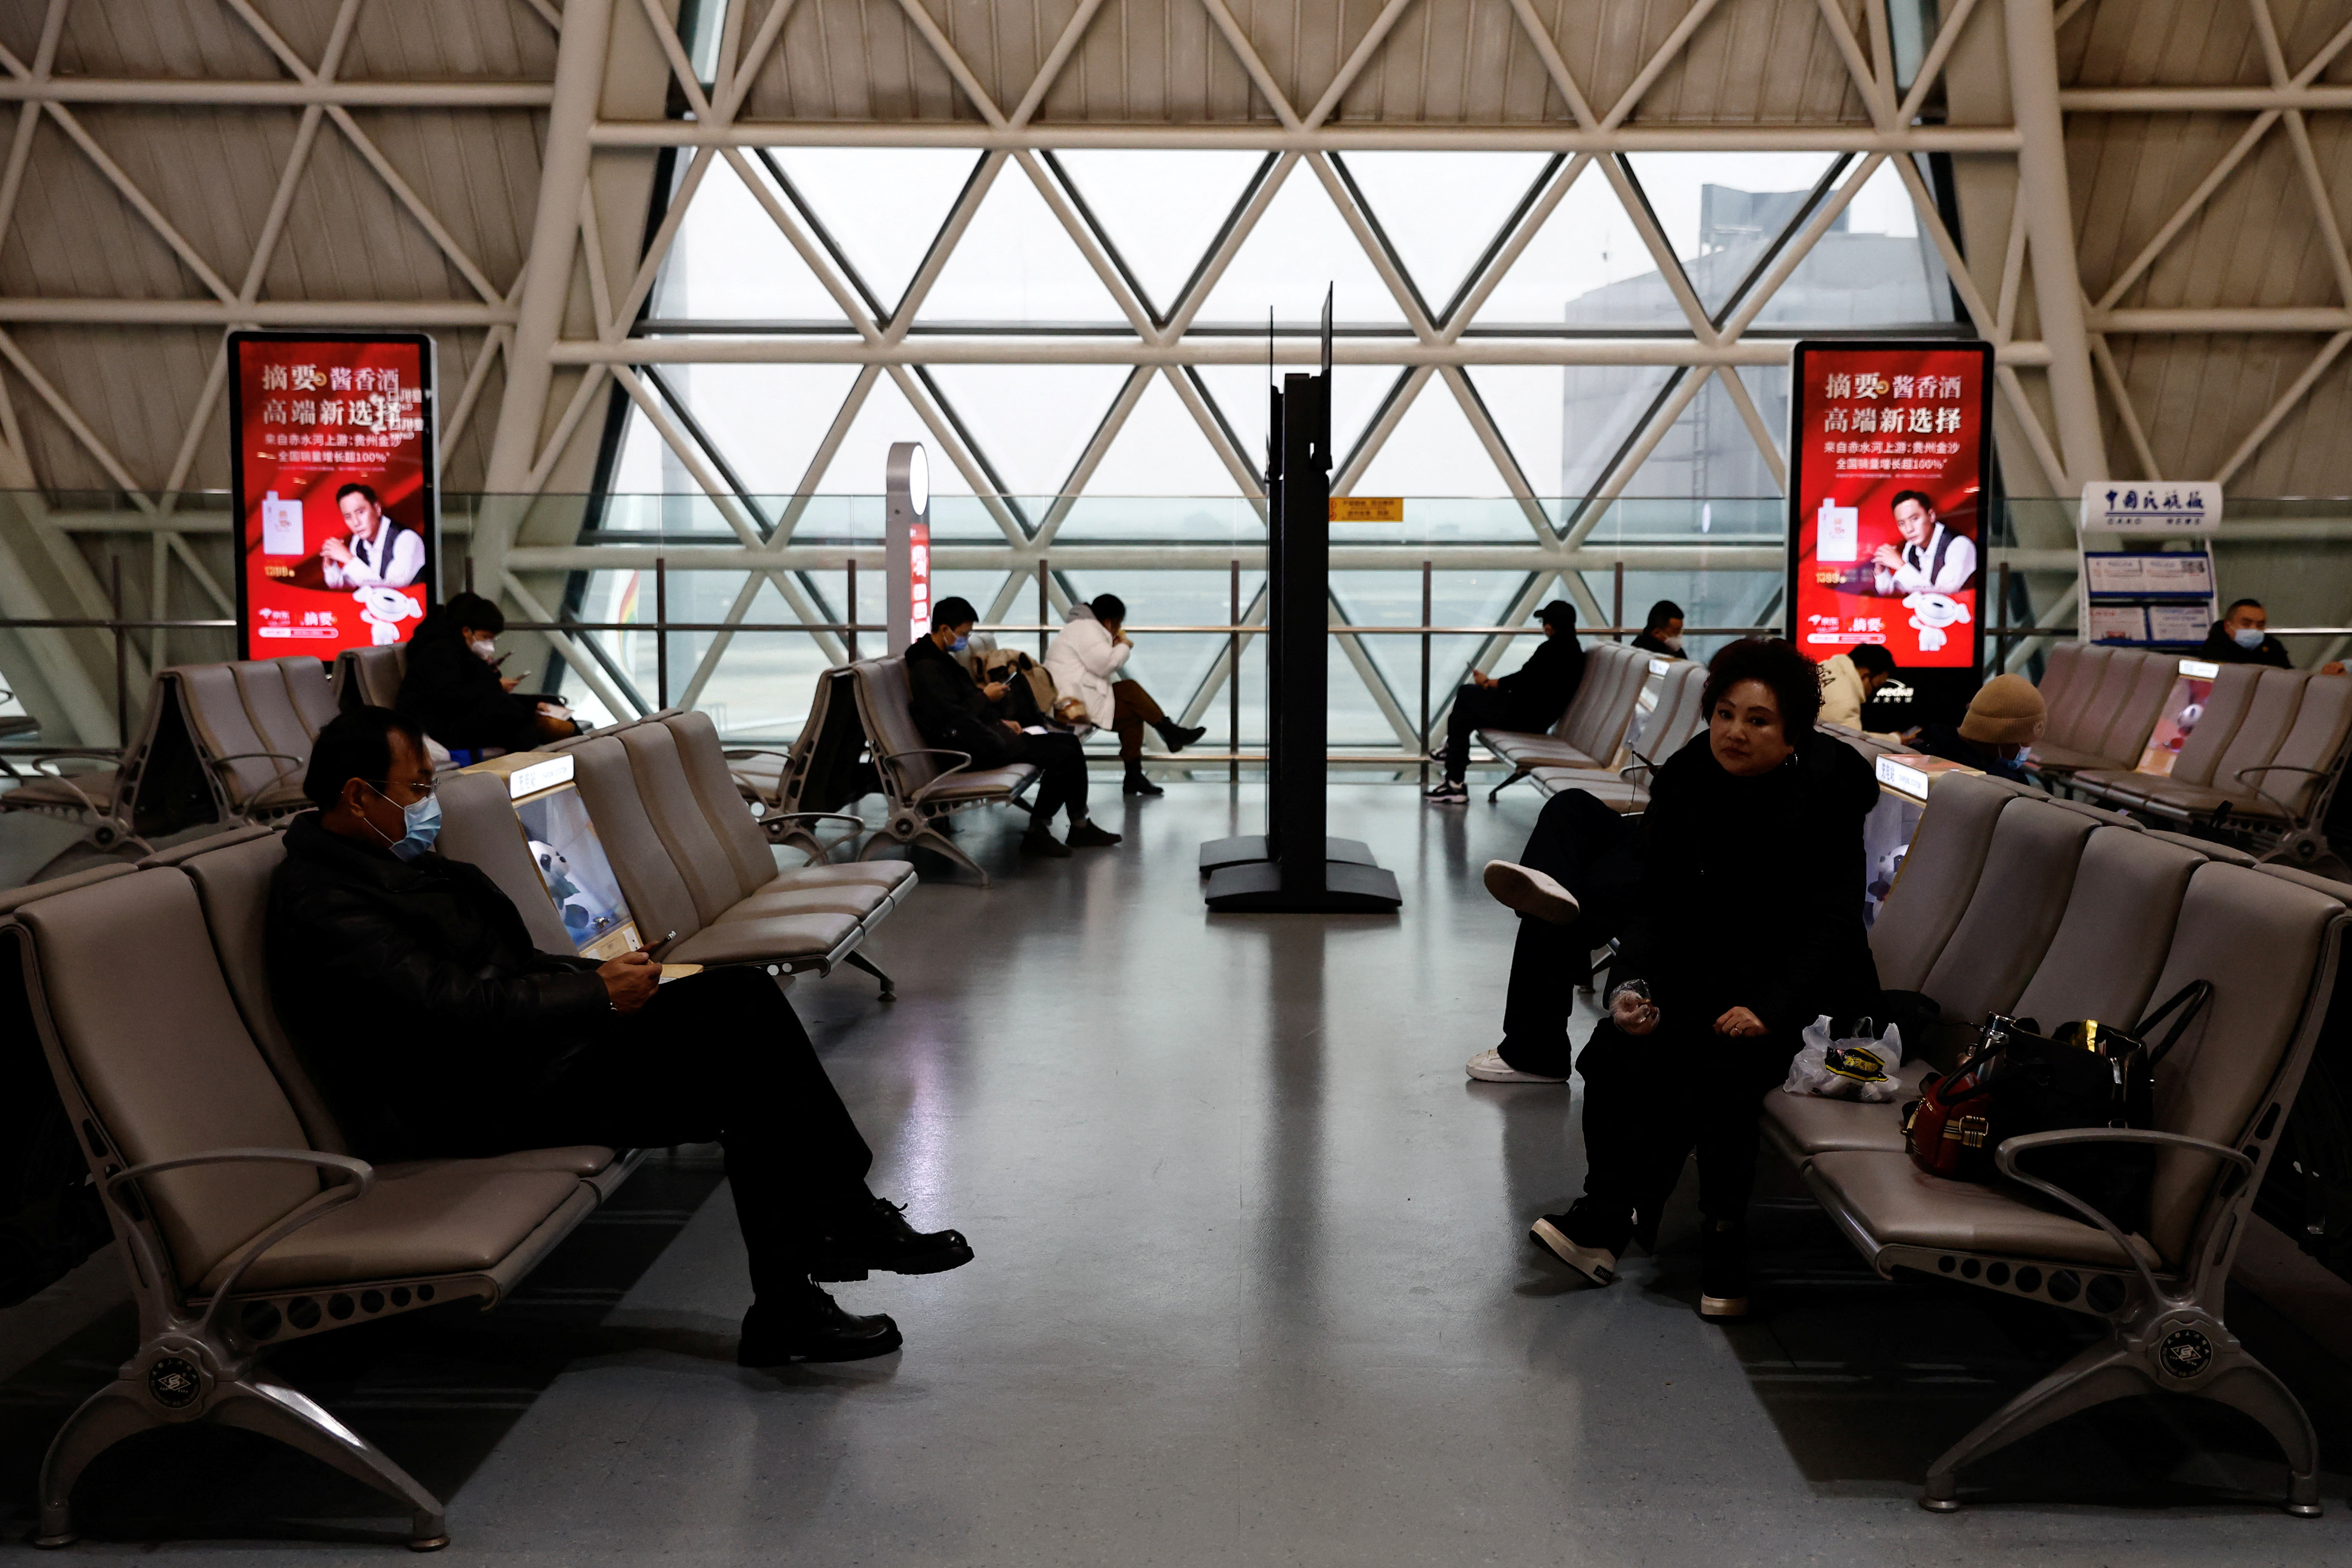 Viajeros esperan para embarcar en su avión en el aeropuerto internacional de Chengdu Shuangliu en medio de una oleada de contagios de la enfermedad por coronavirus (COVID-19), en Chengdu, provincia china de Sichuan, el 30 de diciembre de 2022. REUTERS/Tingshu Wang